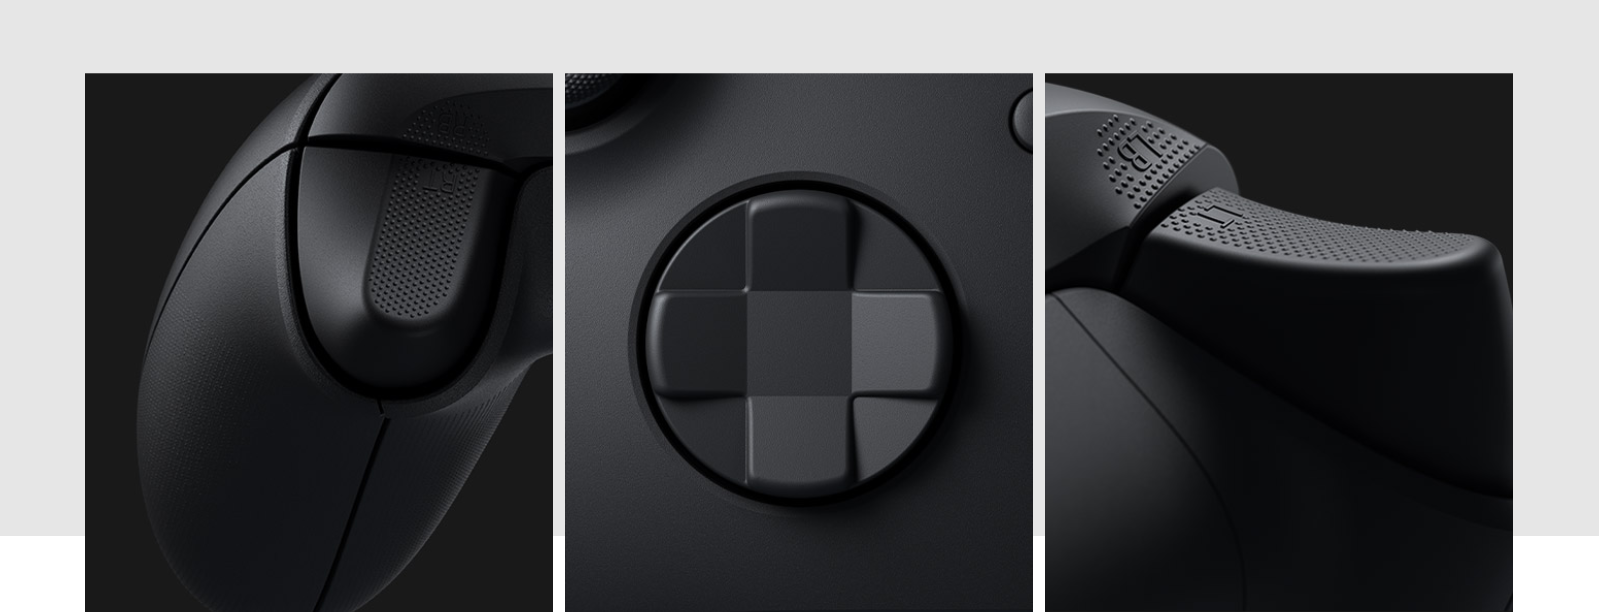 Tay cầm chơi game Xbox Series X Controller - Pulse Red có thiết kế cầm nắm, điều khiển dễ dàng